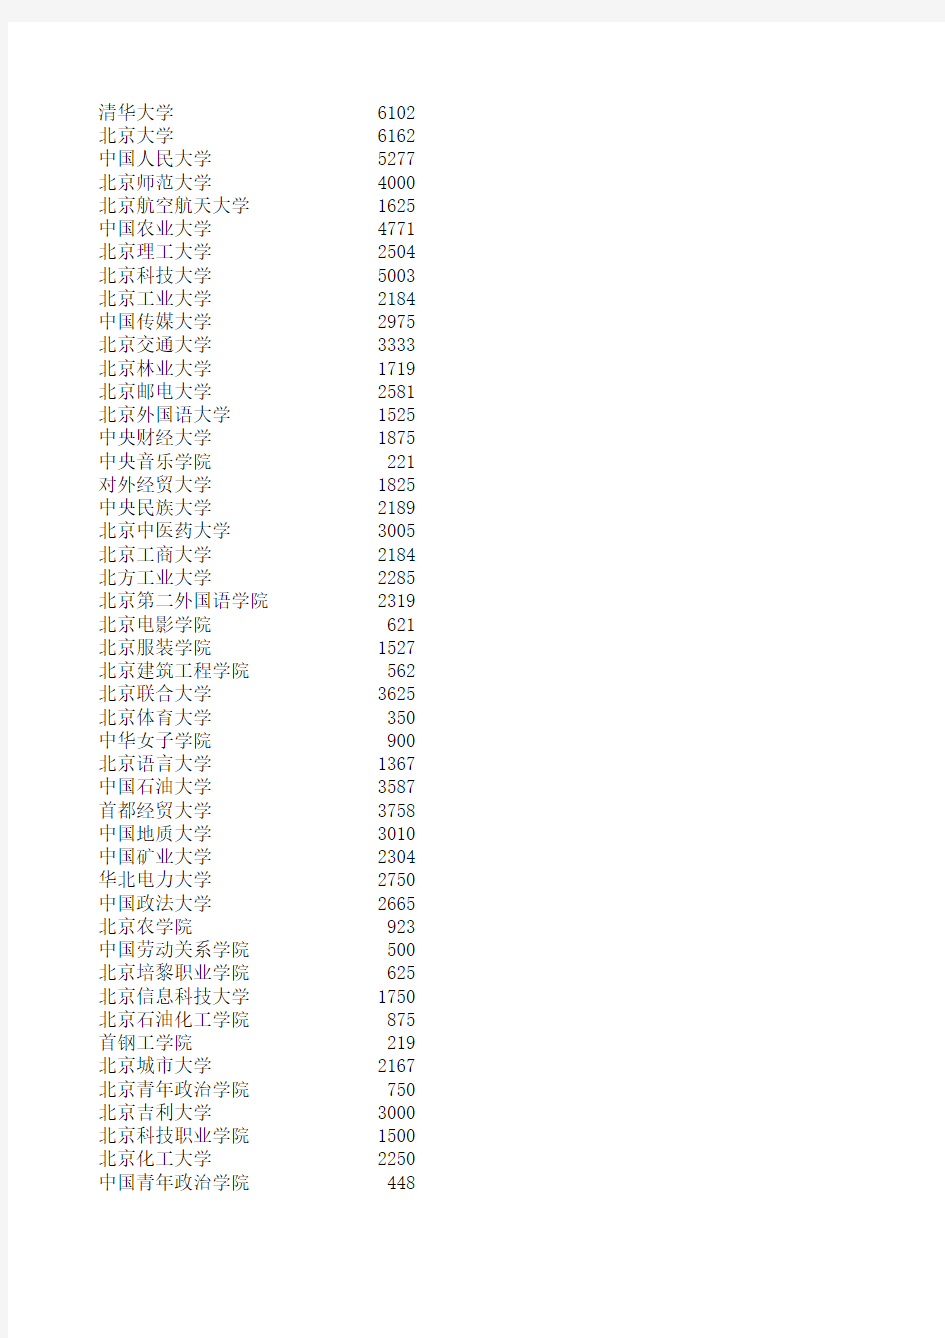 2011年最新北京各大学的学生宿舍数量统计表